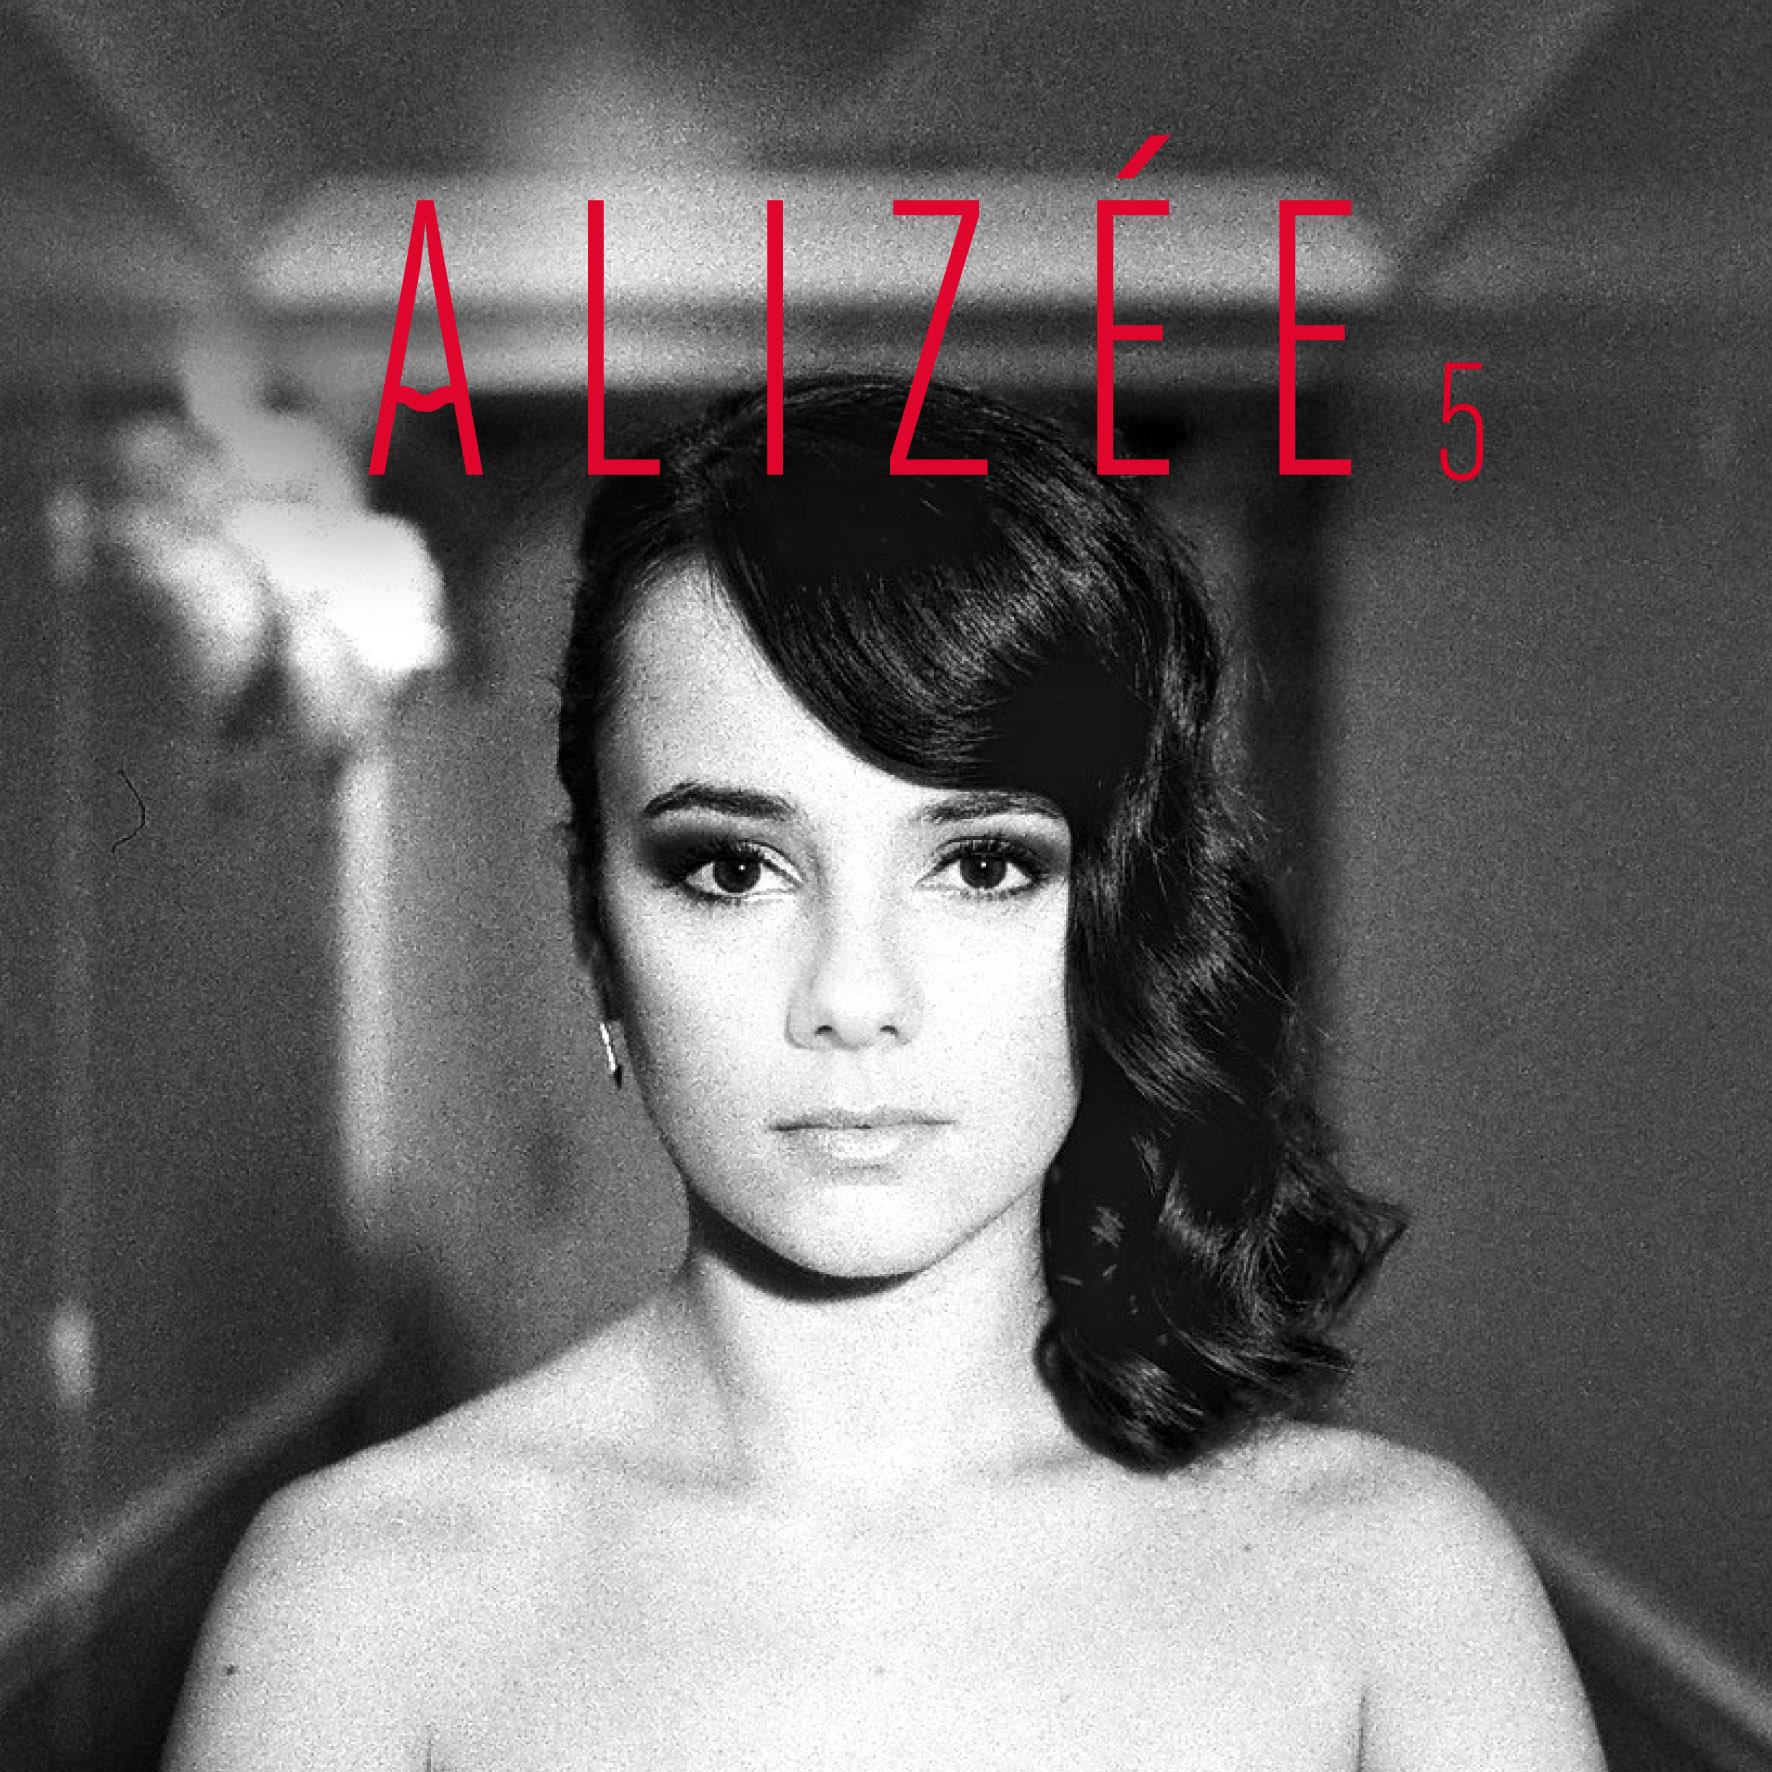 Обложка нового альбом Ализе - "5"